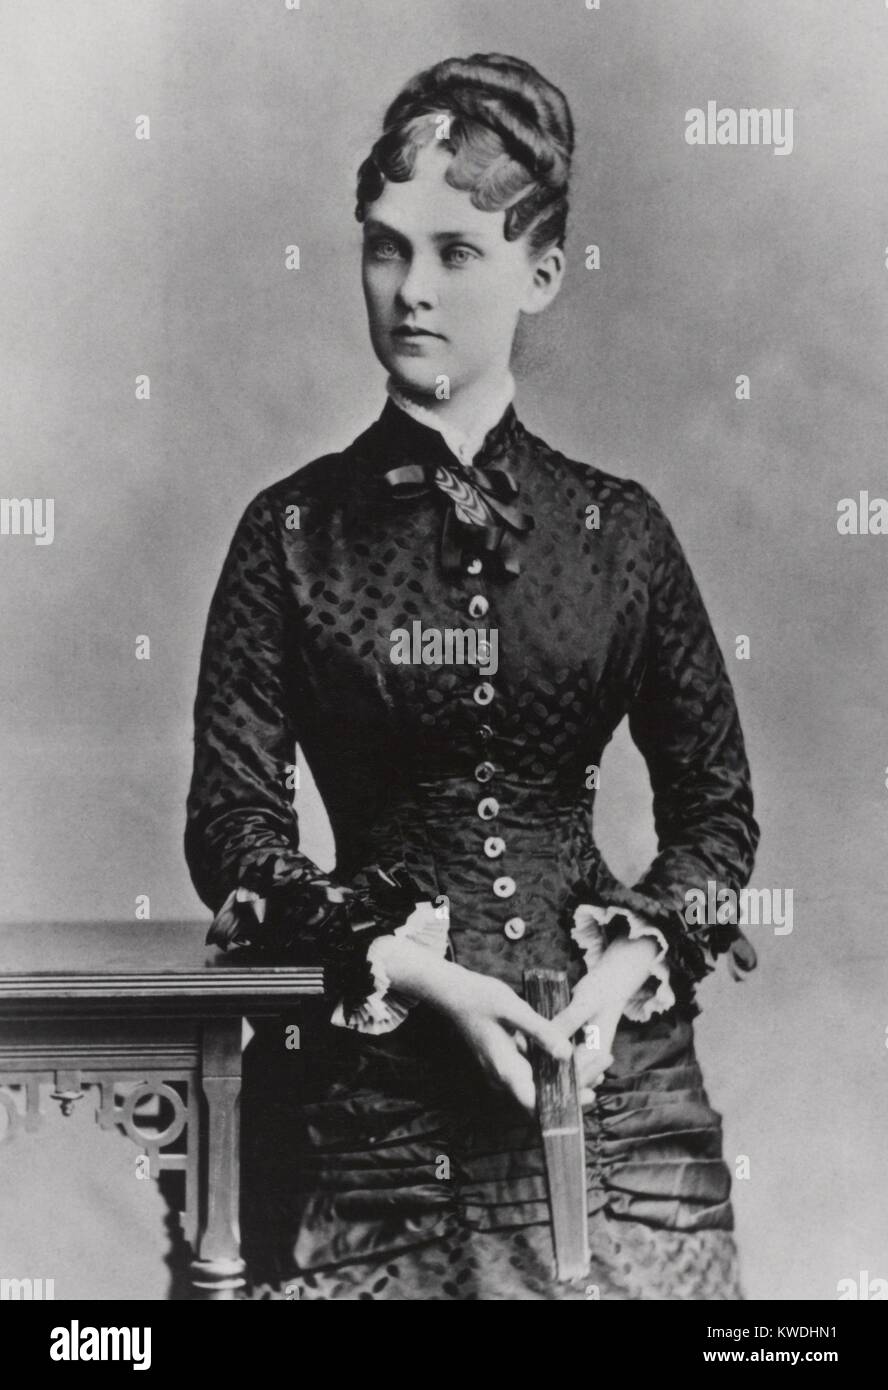 Alice Hathaway Lee Roosevelt Roosevelt Theodores, première épouse et mère d'Alice Roosevelt. Elle était mariée à Roosevelt depuis moins de 4 ans lorsqu'elle mourut en 1884 à l'âge de 23 (BSLOC 2017 6 79) Banque D'Images